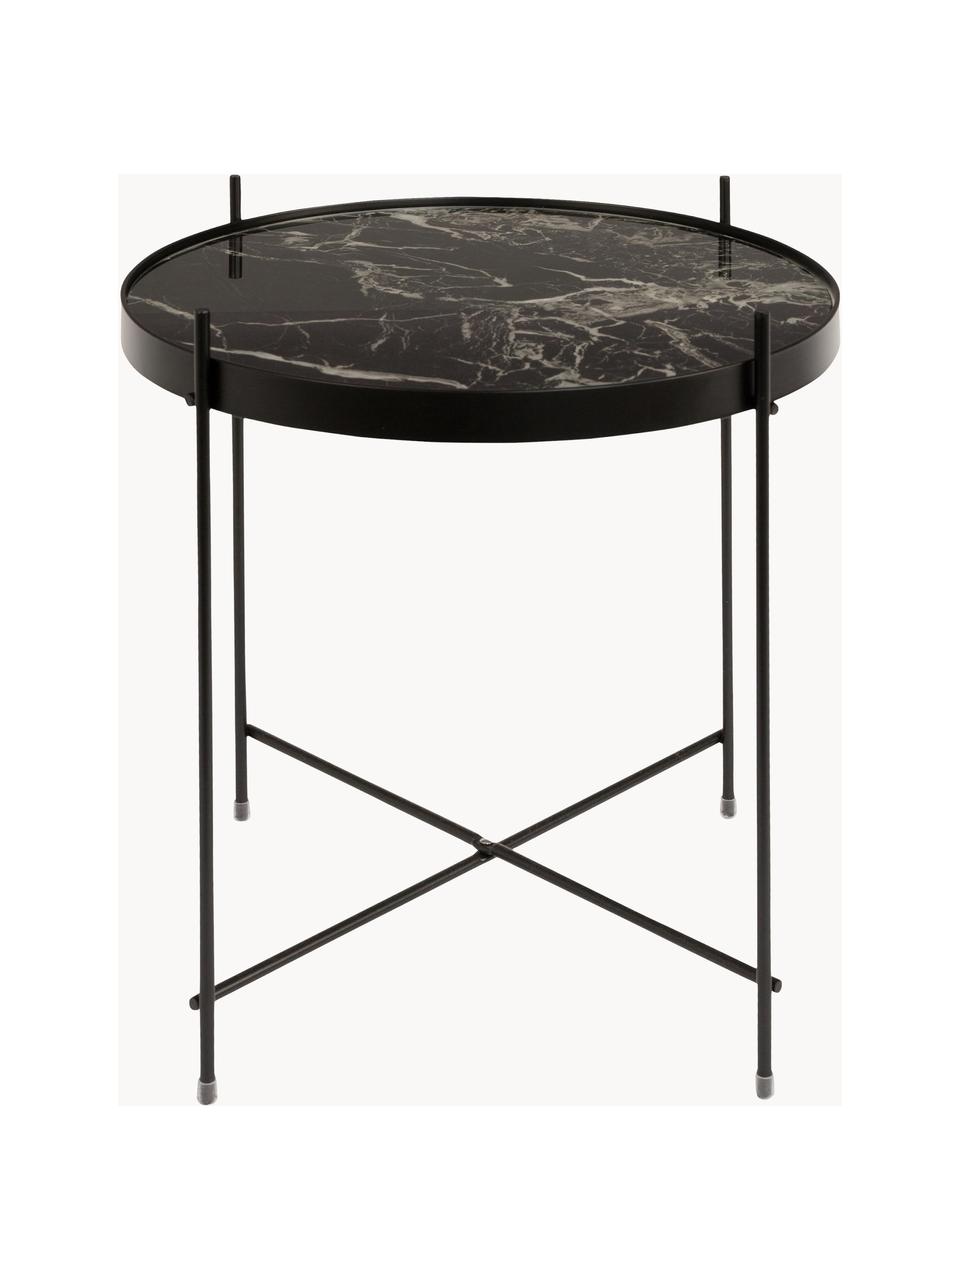 Skládací odkládací stolek se skleněnou deskou v mramorovém vzhledu Cupid, Černý mramorový vzhled, Ø 43 cm, V 45 cm